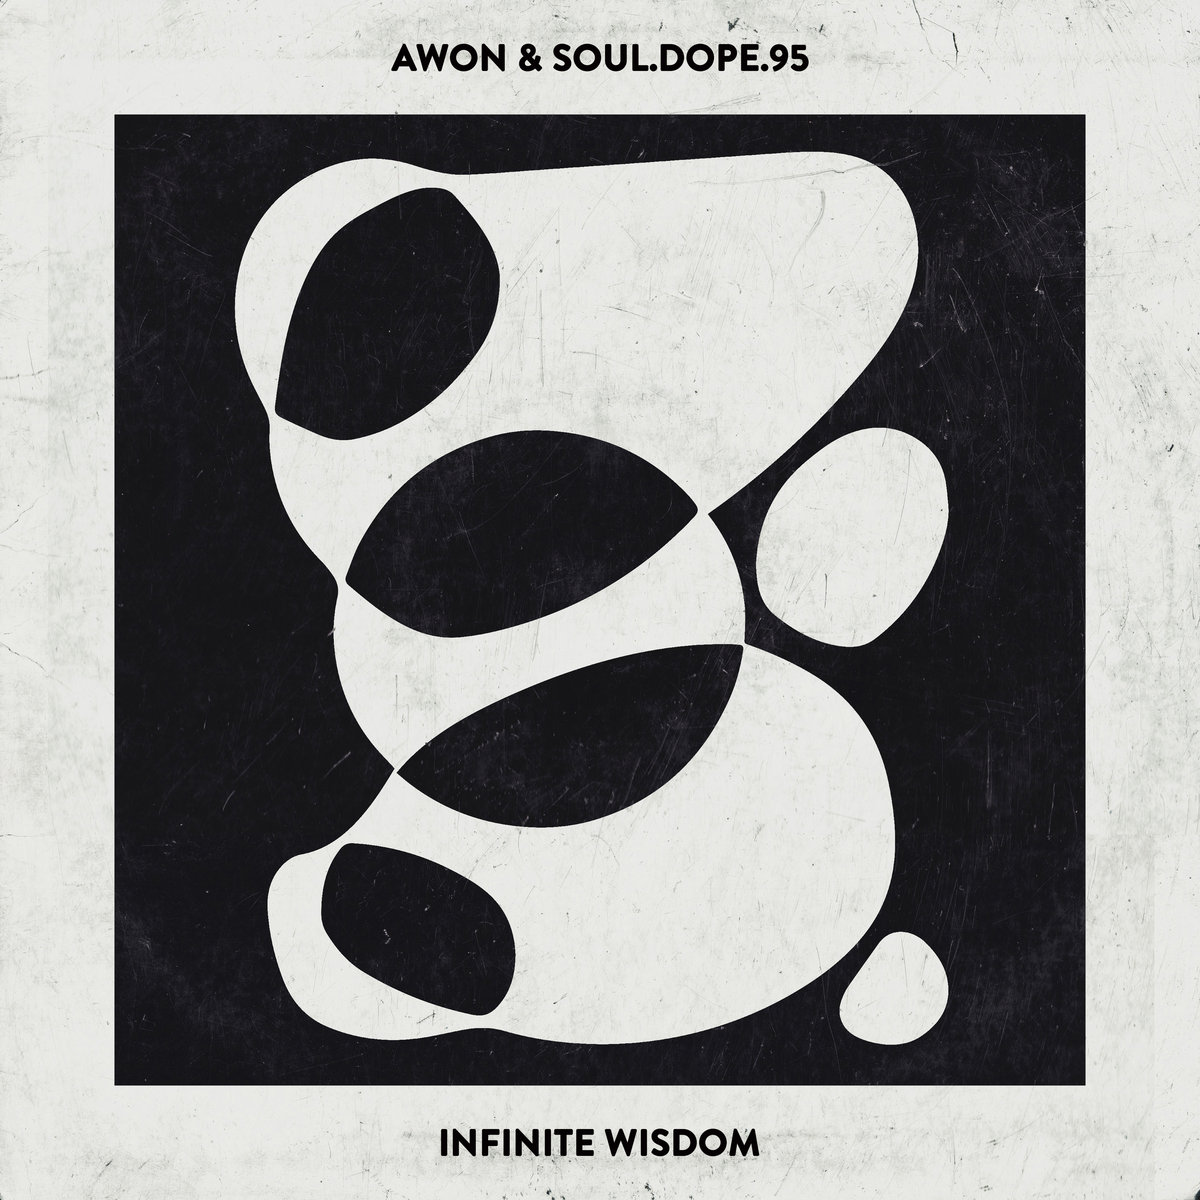 Infinite Wisdom by Awon & SOUL.DOPE.95